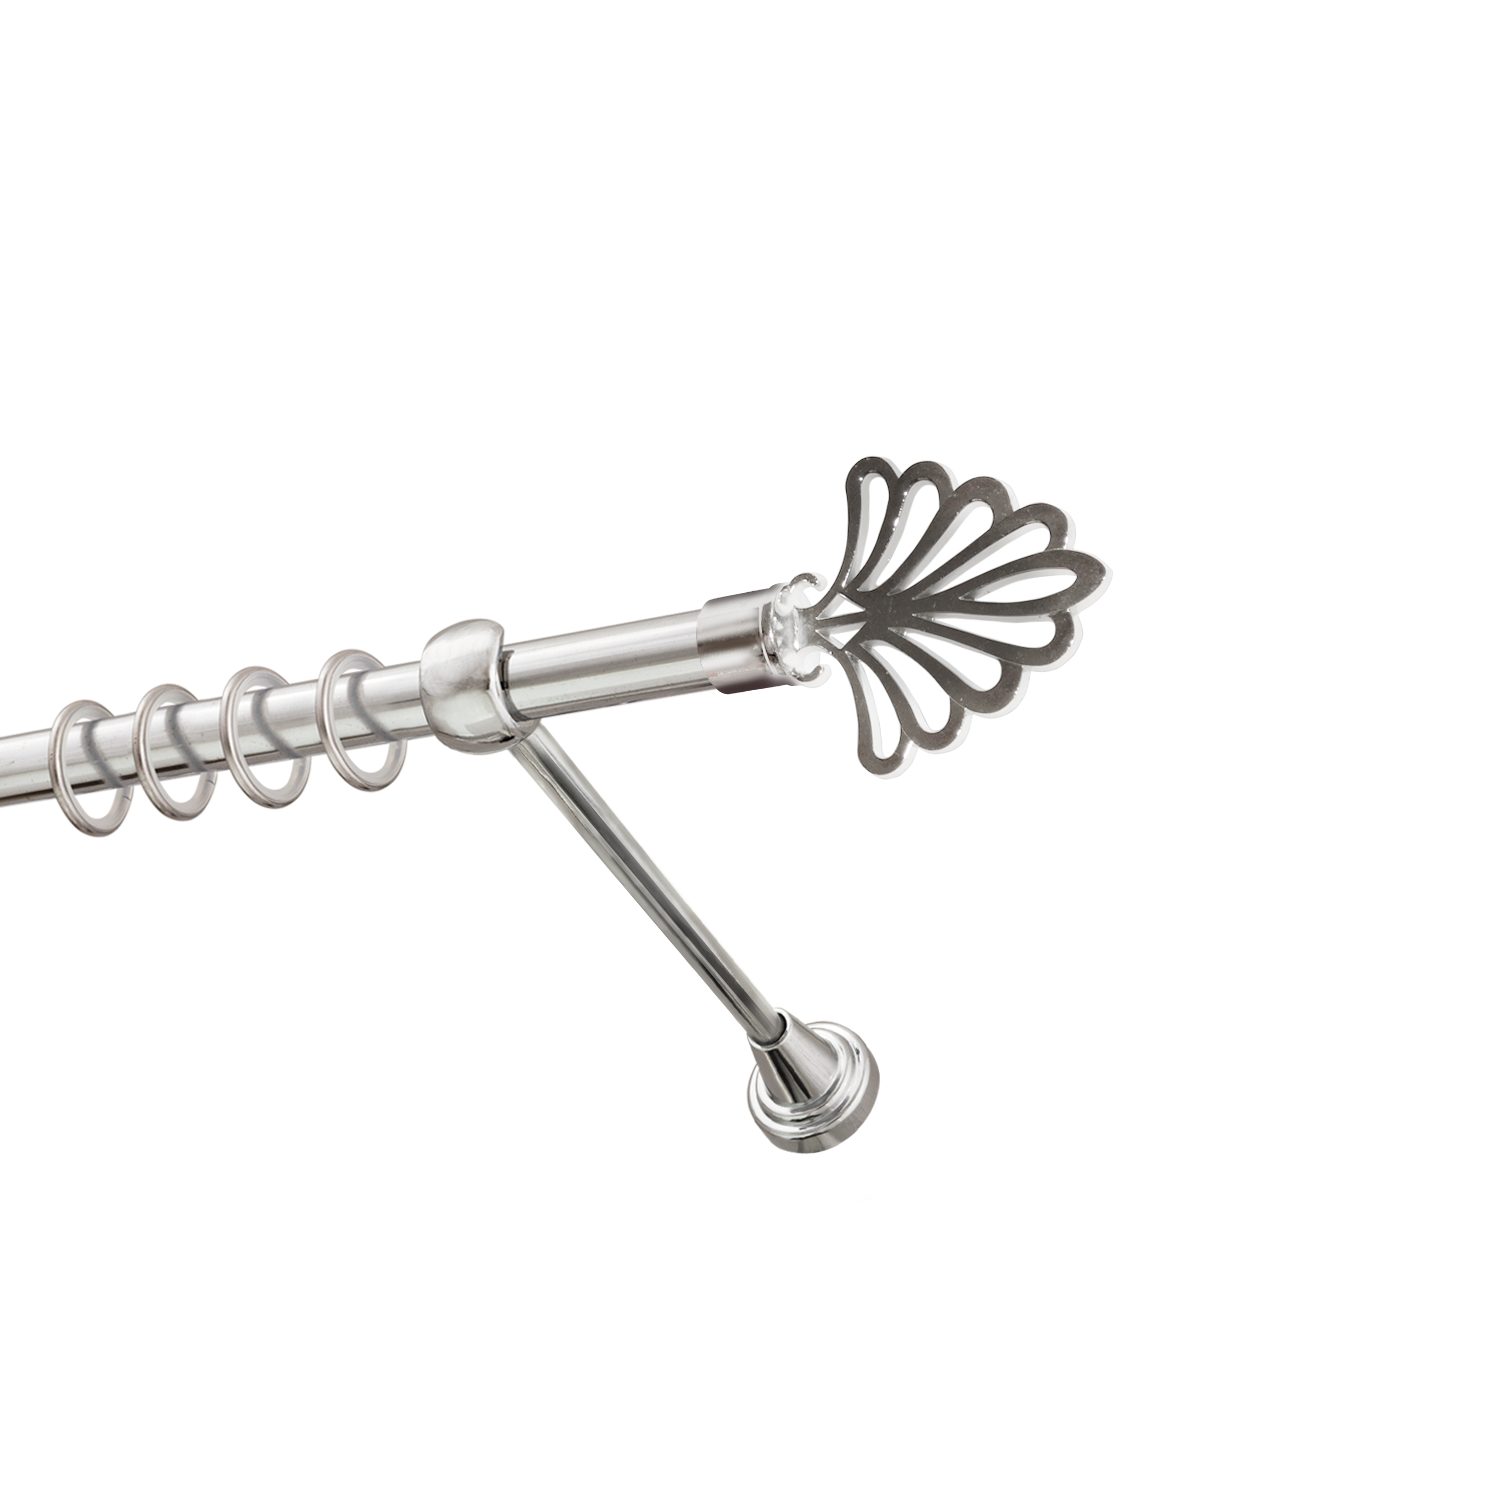 Металлический карниз для штор Бутик, однорядный 16 мм, серебро, гладкая штанга, длина 200 см - фото Wikidecor.ru